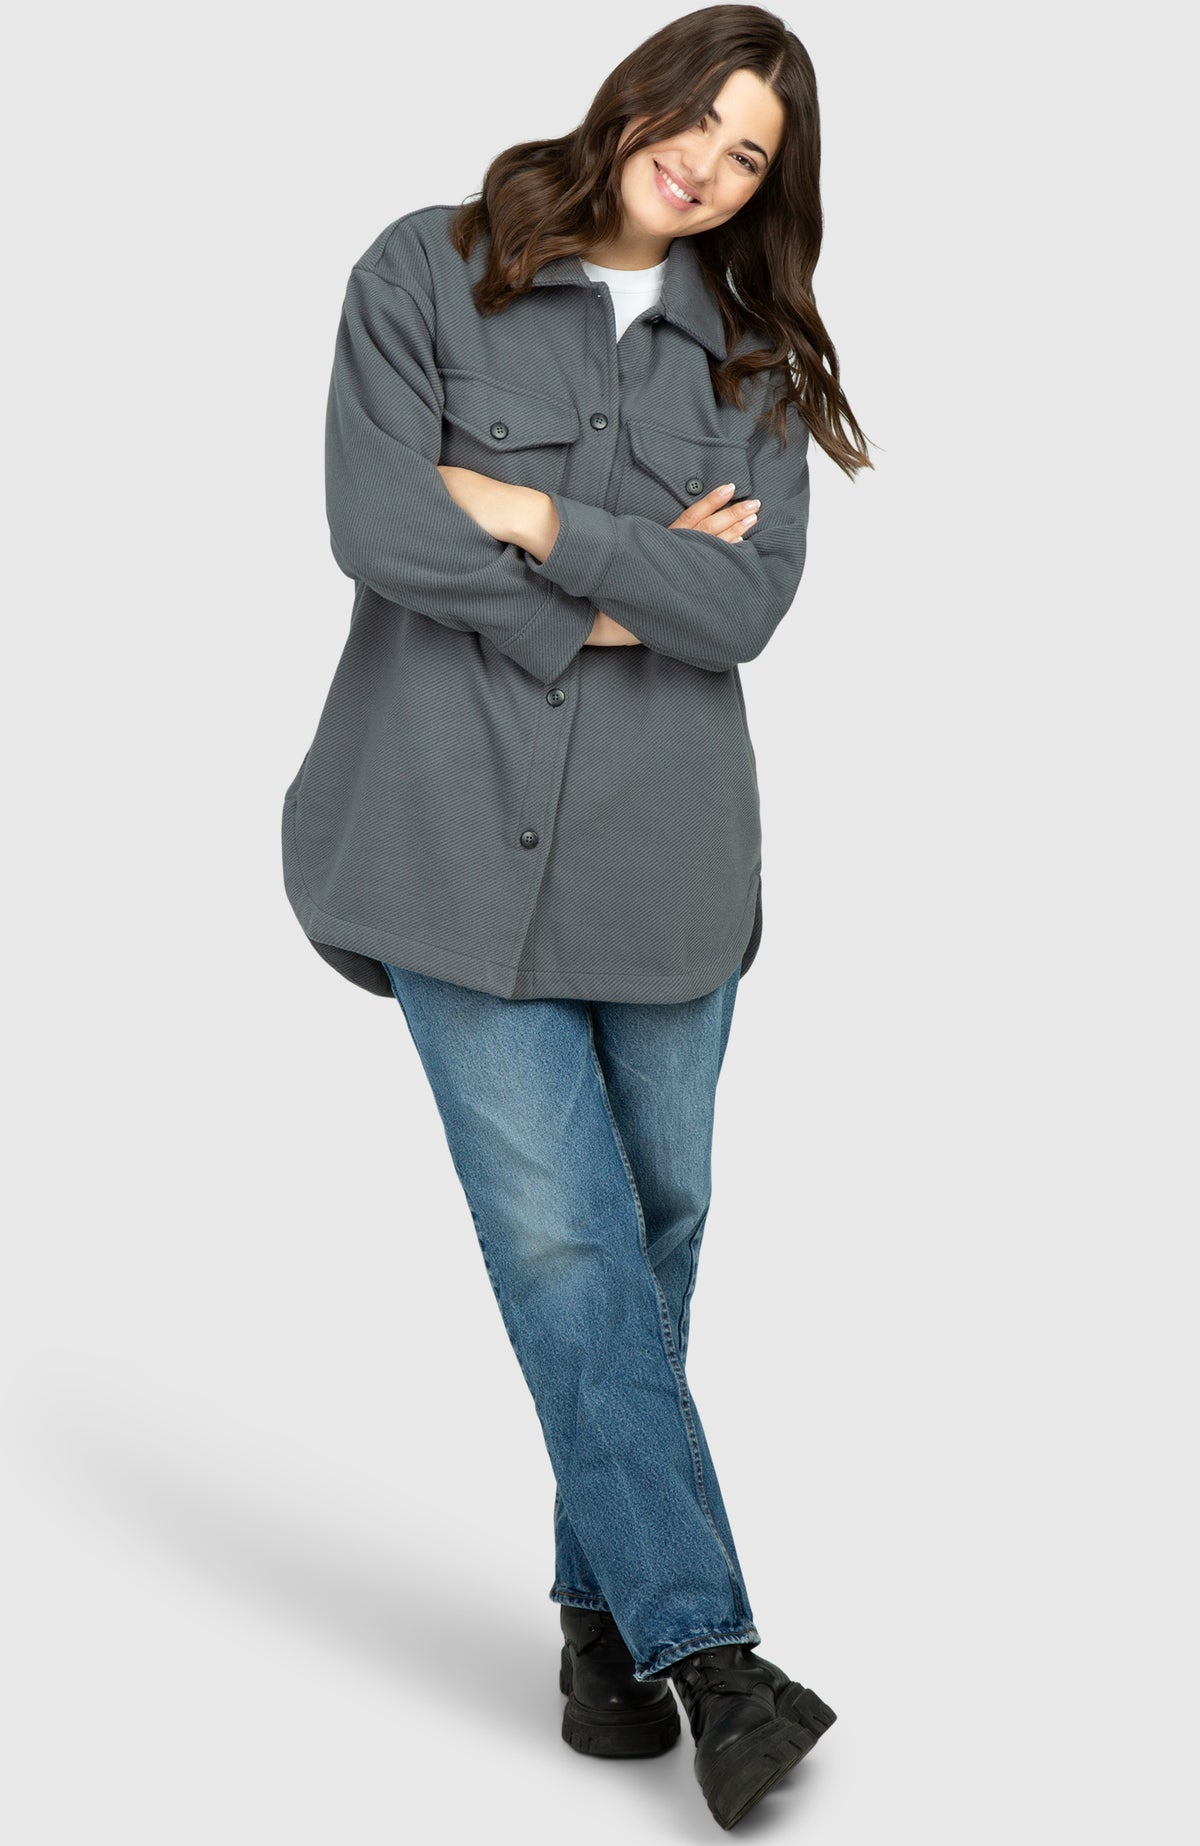 Slate Grey Oversized Twill Knit Shacket for Women - Full Length